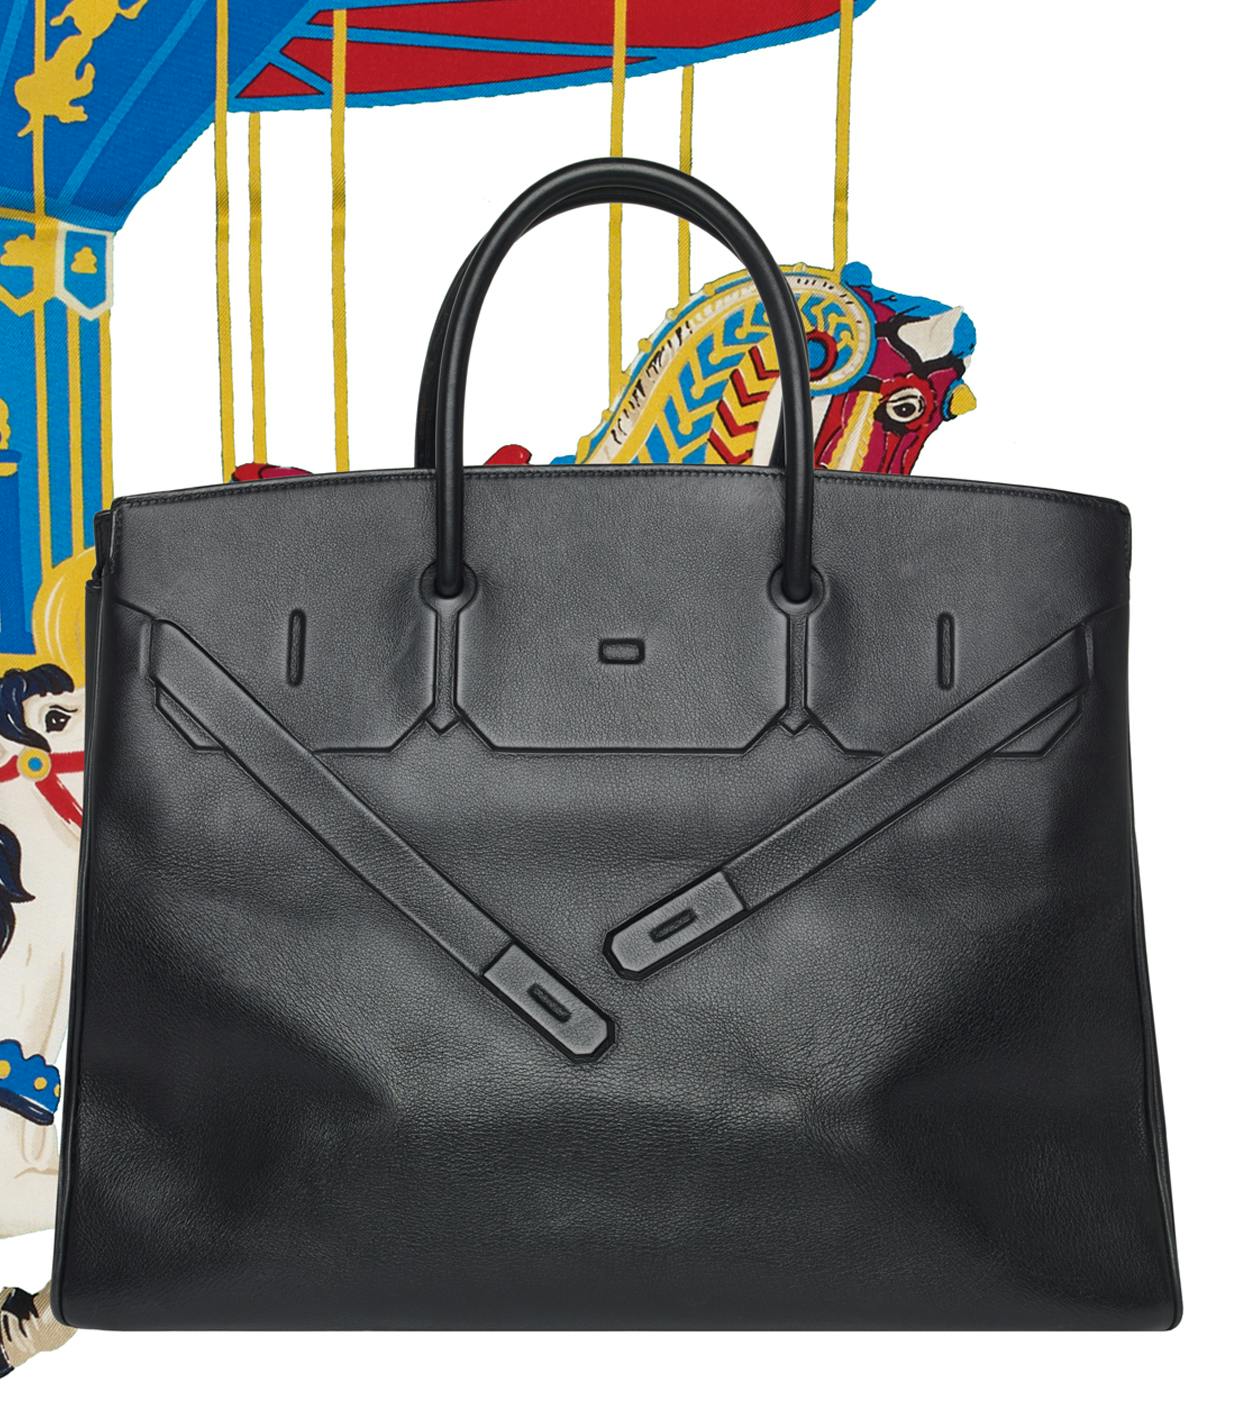 6 choses à savoir sur le Birkin d'Hermès, le sac le plus demandé du monde